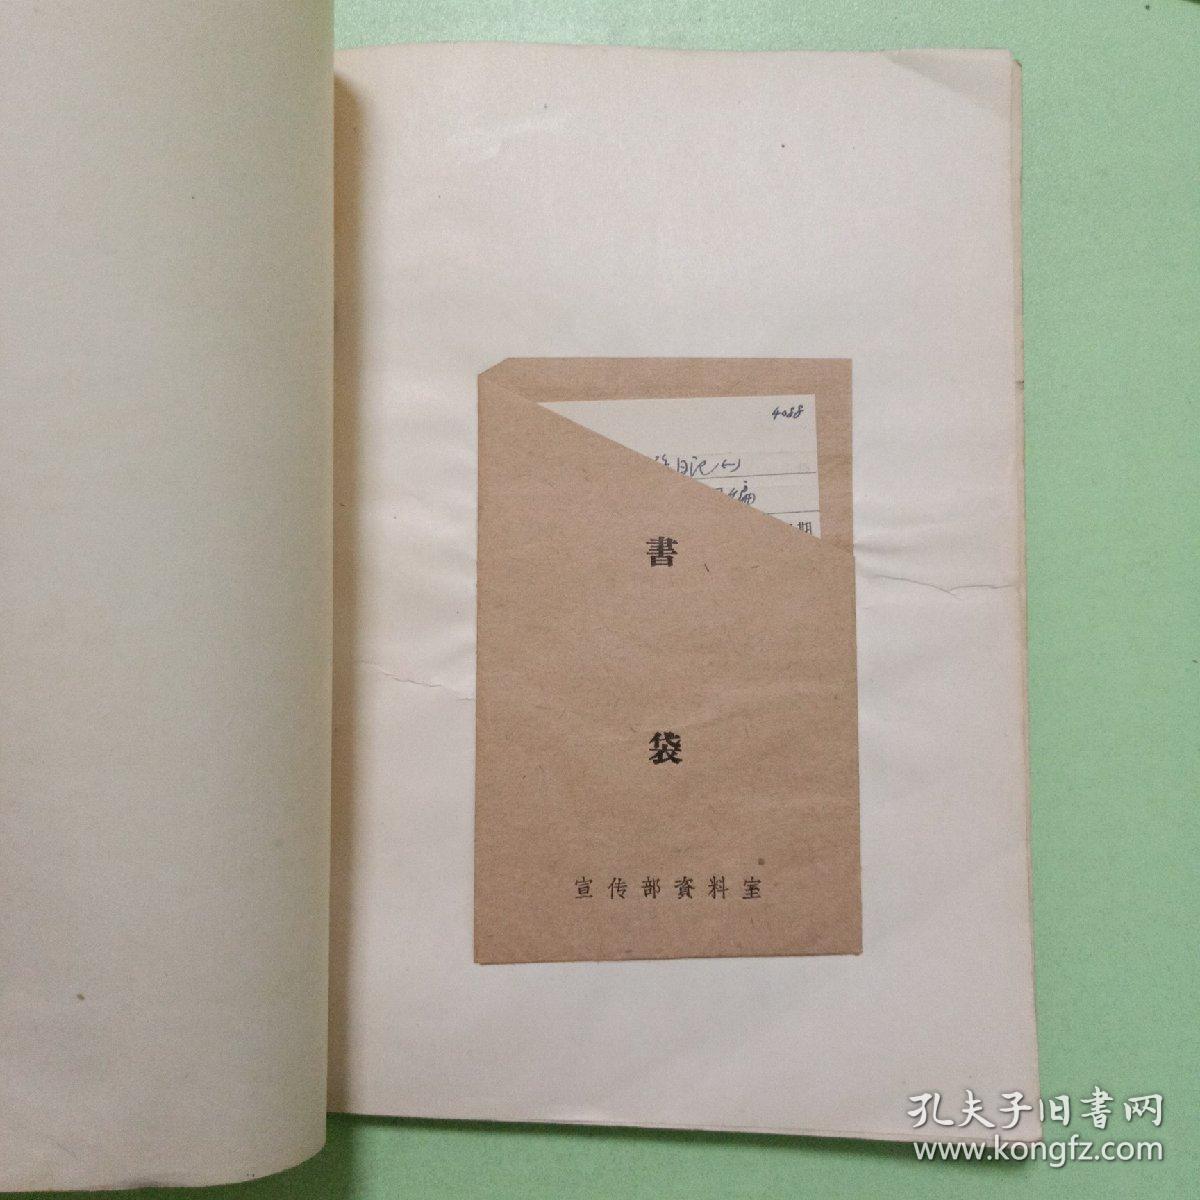 西北科学考察团丛刊之一：徐旭生西游日记（第一册）民国19年初版